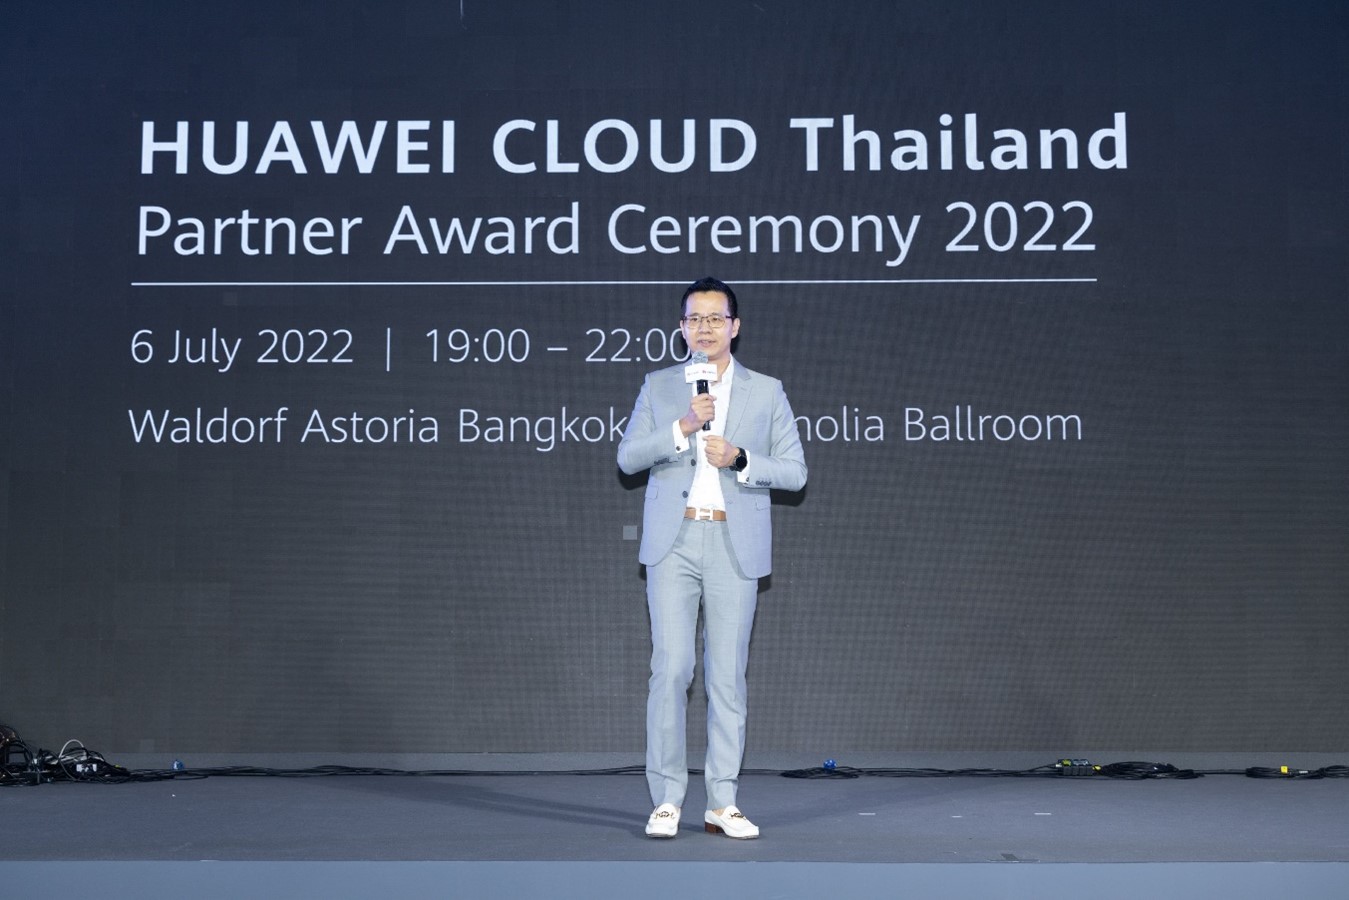 หัวเว่ยเสริมแกร่งอีโคซิสเต็มคลาวด์ประเทศไทย  ประกาศกลยุทธ์สนับสนุนพาร์ทเนอร์ทั่วไทยรับปี 2565 พร้อมฉลองความสำเร็จพาร์ทเนอร์ไทยในงานประชุม HUAWEI CLOUD Thailand Partner Summit 2022